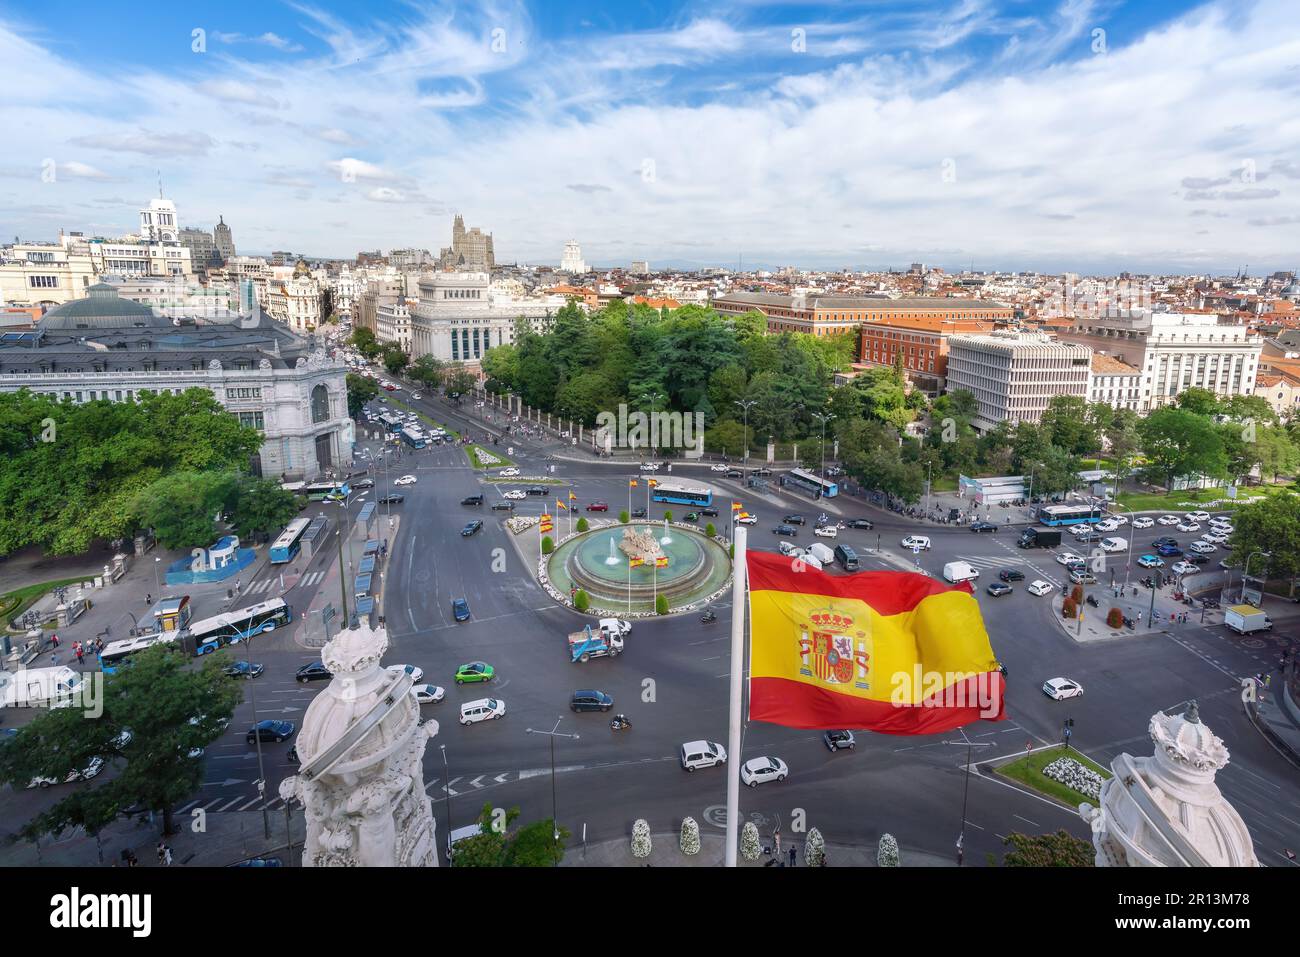 Vue aérienne de la rue Calle de Alcala et de la Plaza de Cibeles avec le drapeau espagnol - Madrid, Espagne Banque D'Images